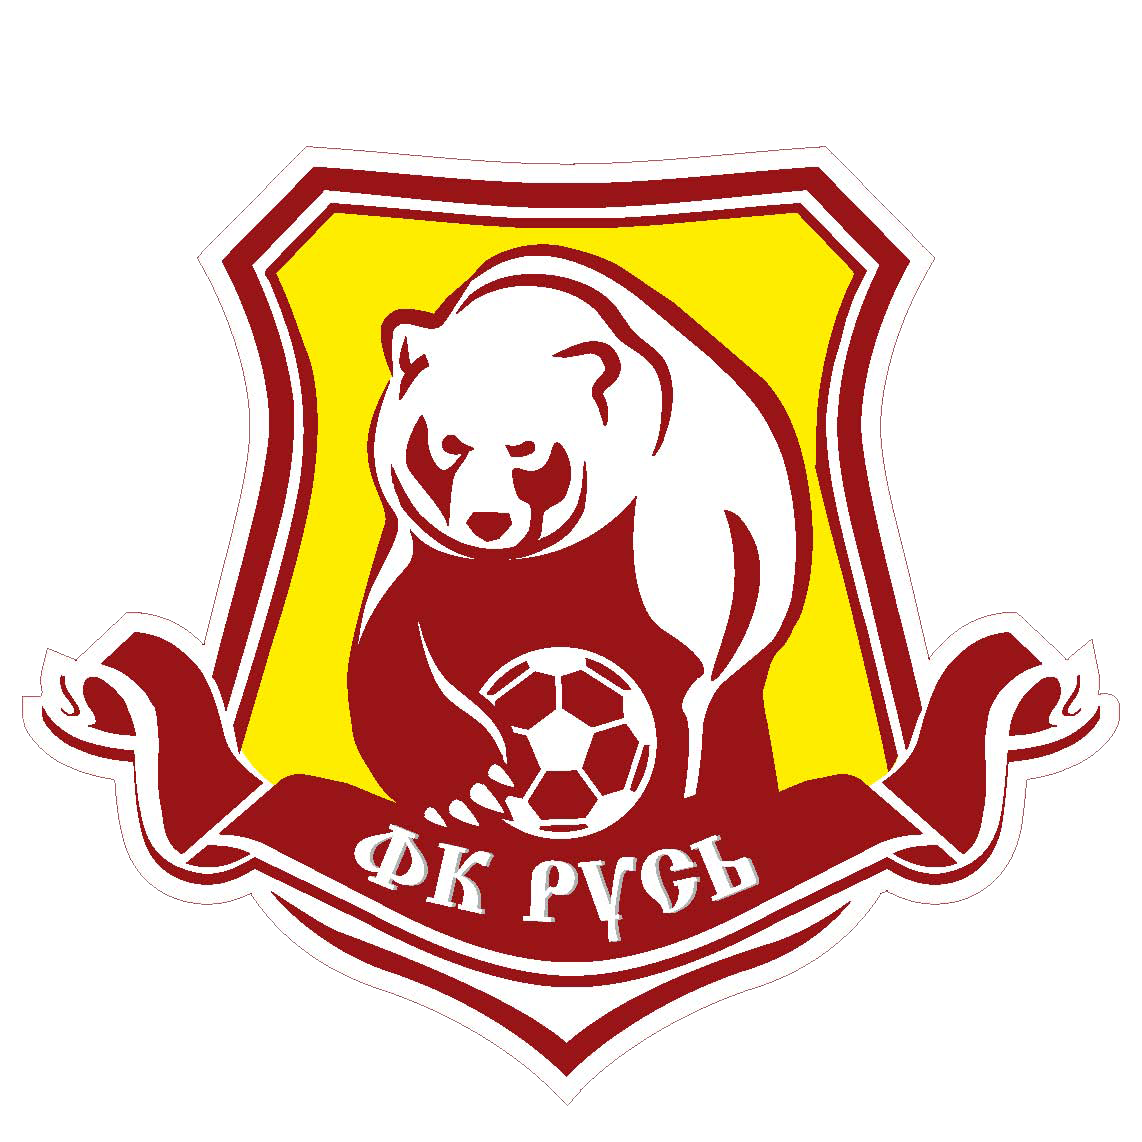 Футбол футбольные клубы россии